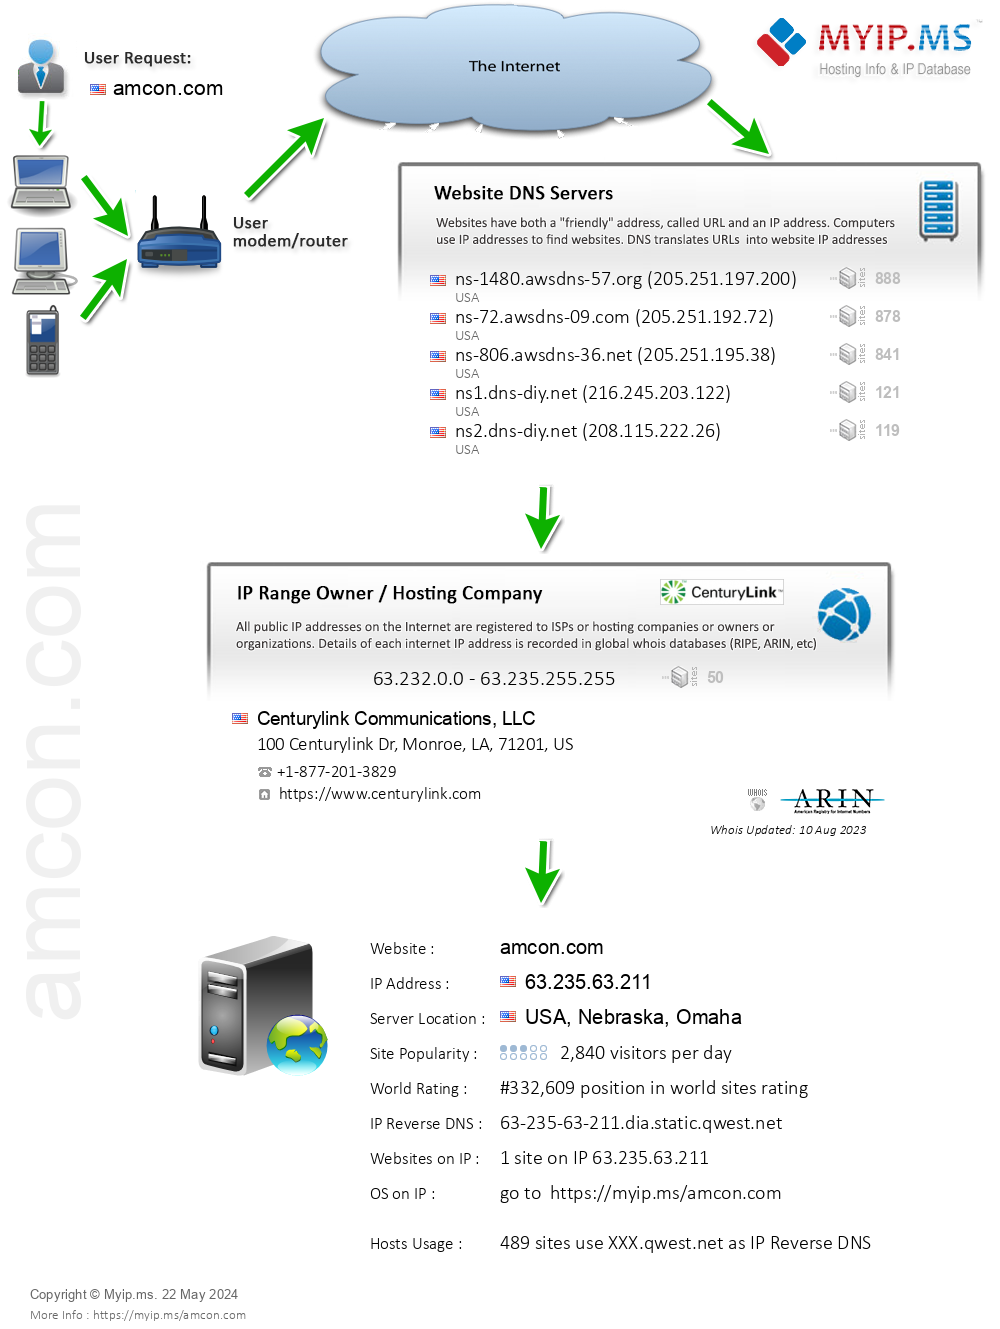 Amcon.com - Website Hosting Visual IP Diagram